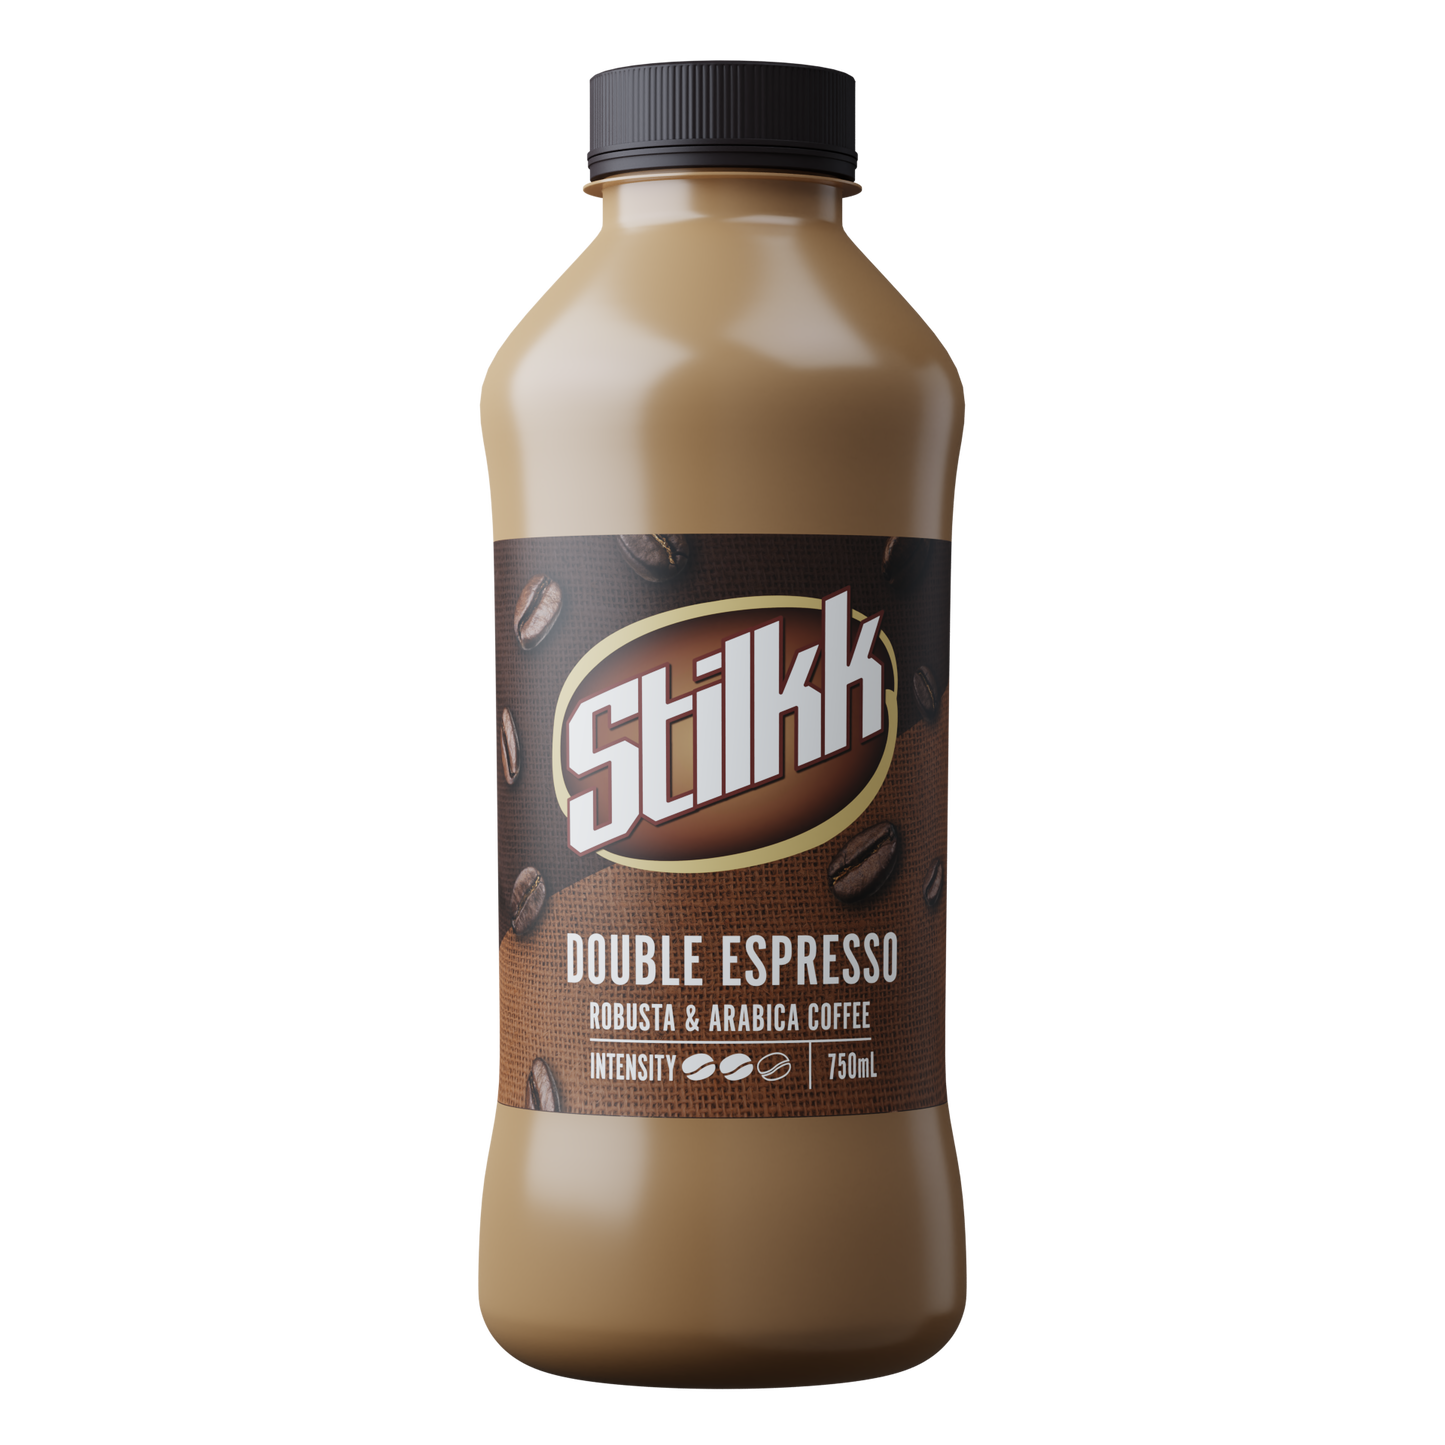 Stilkk Iced Coffee - Creative